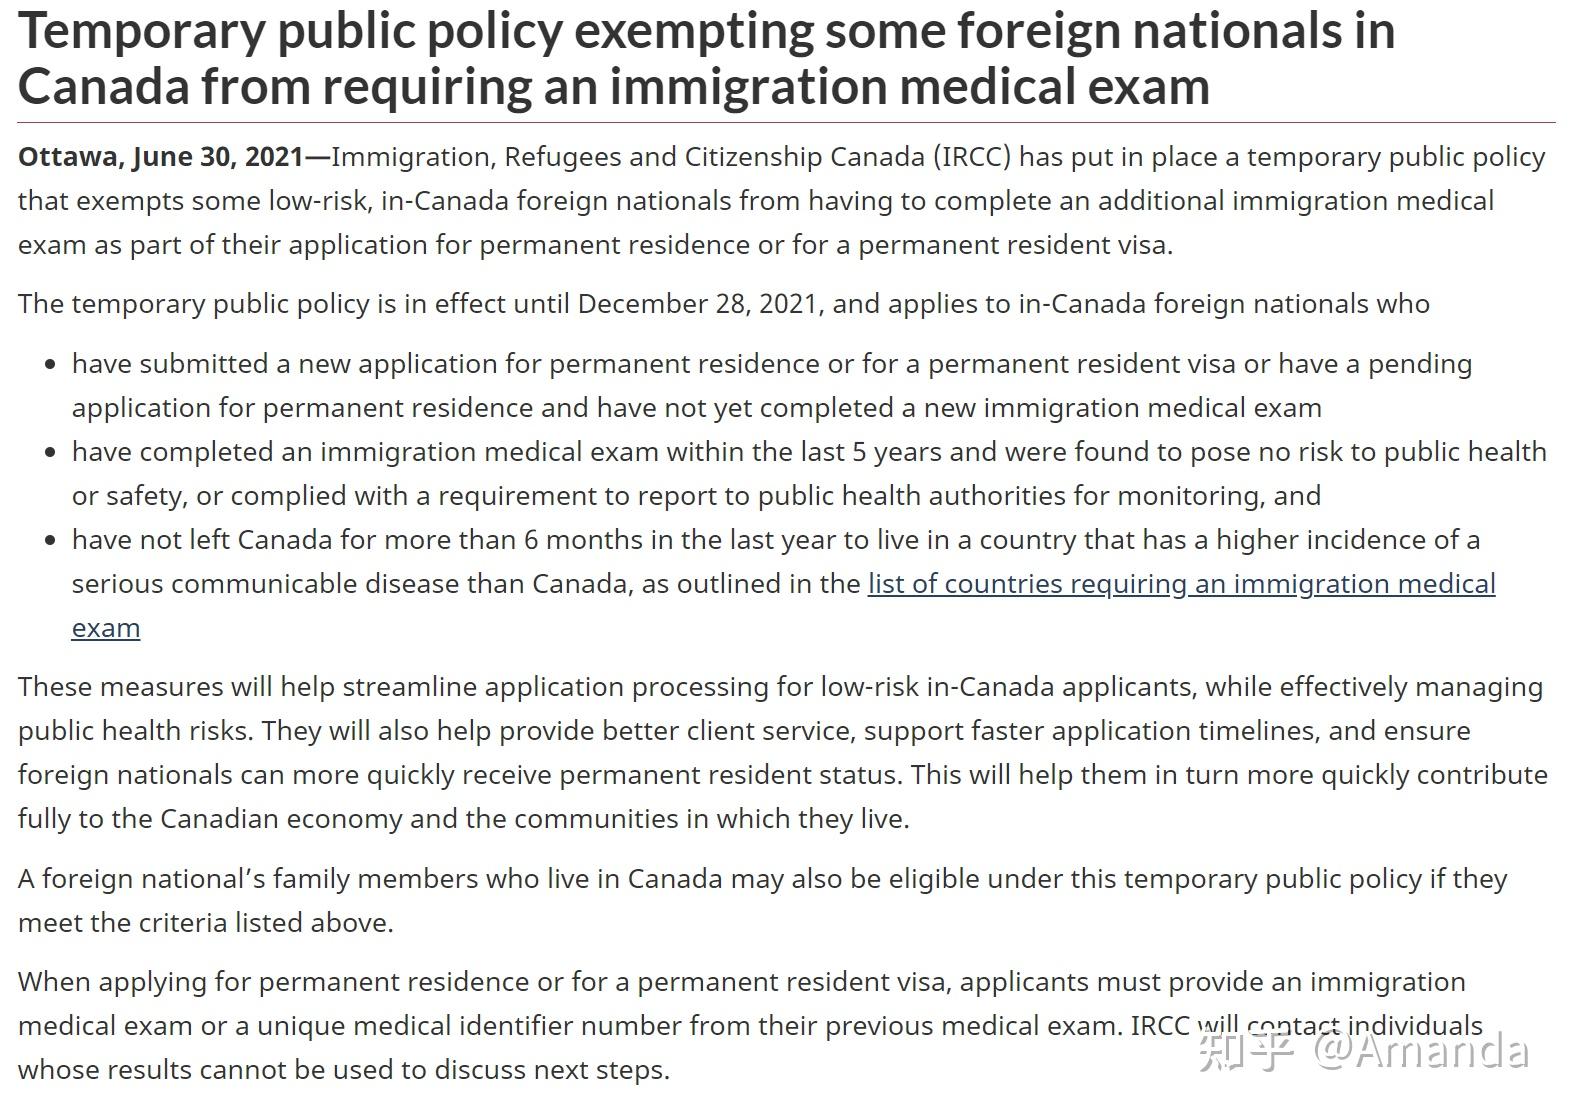 加拿大颁布临时公共政策,豁免某些在加拿大境内的移民申请人的体检